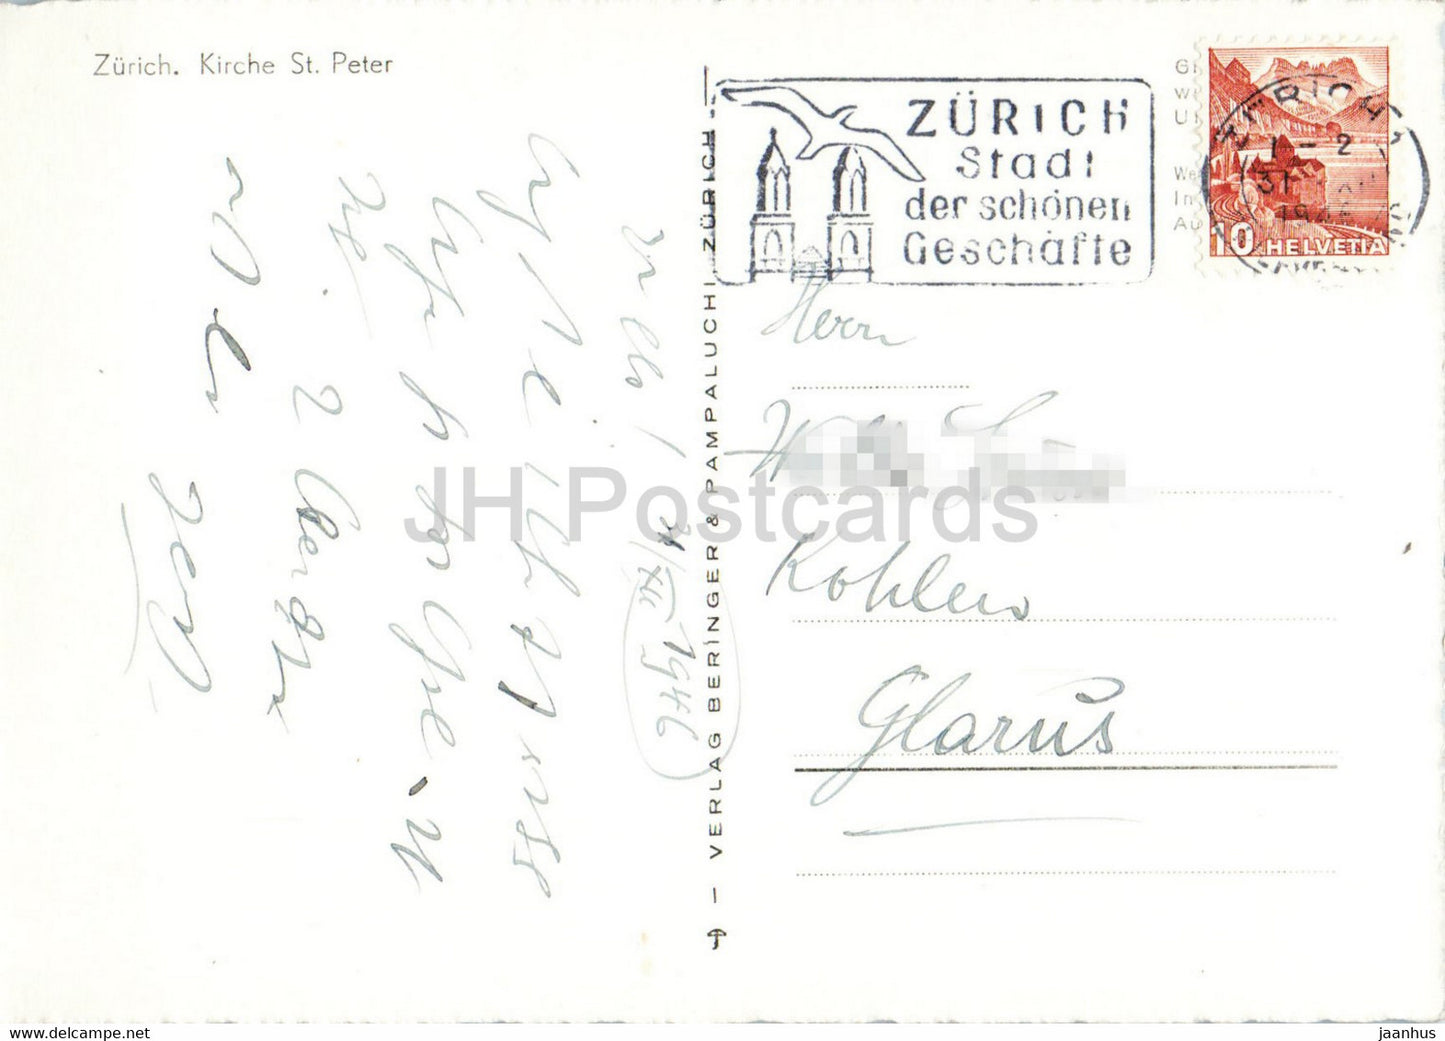 Zurich - Kirche St Peter - église - Herzliche Neujahrswunsche - 1946 - carte postale ancienne - Suisse - utilisé